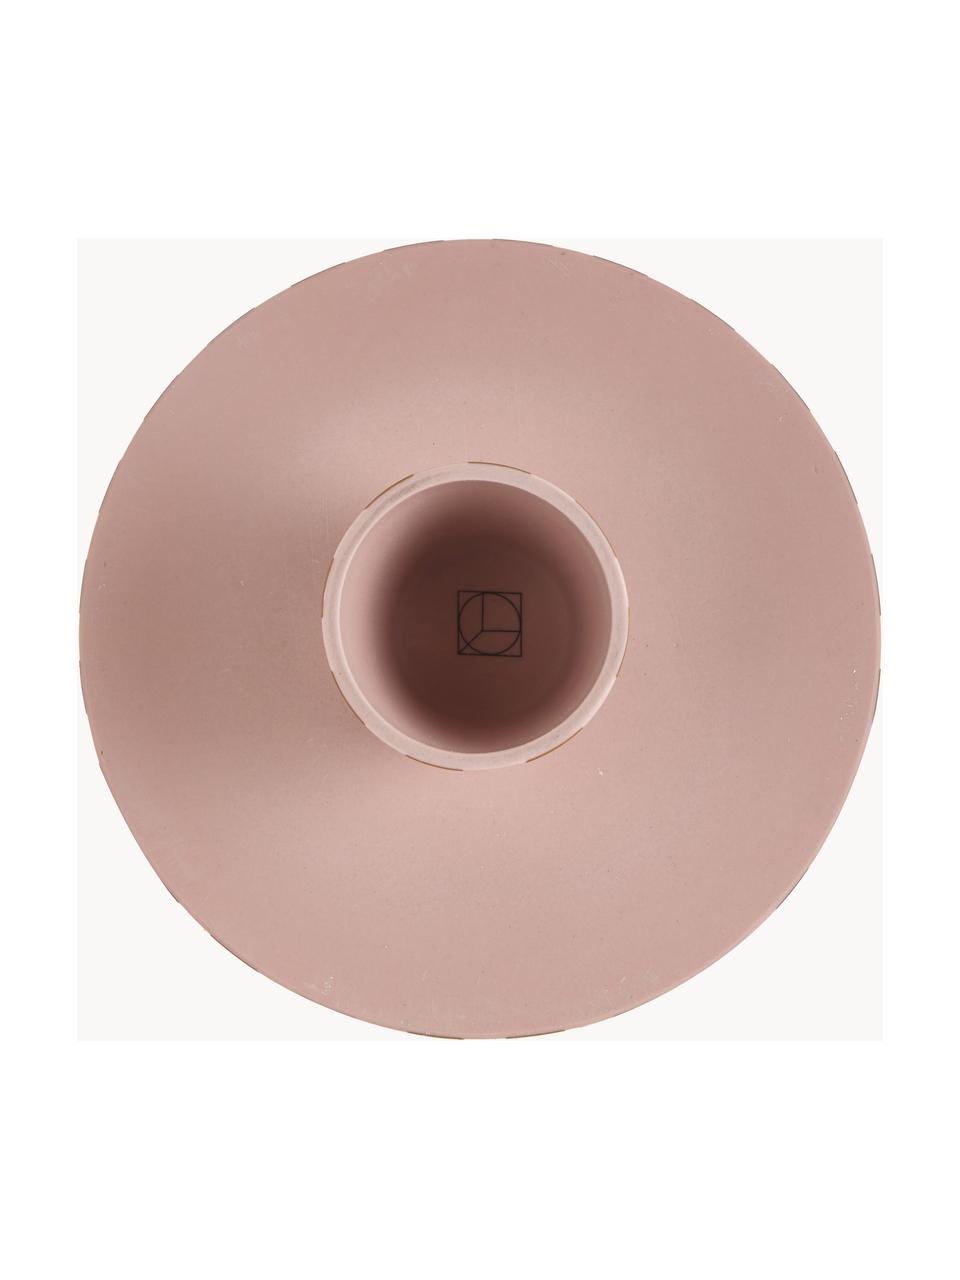 Pruhovaný servírovací talíř z keramiky Toppu, Keramika, Světle růžová, terakotová, Ø 20 cm, V 9 cm